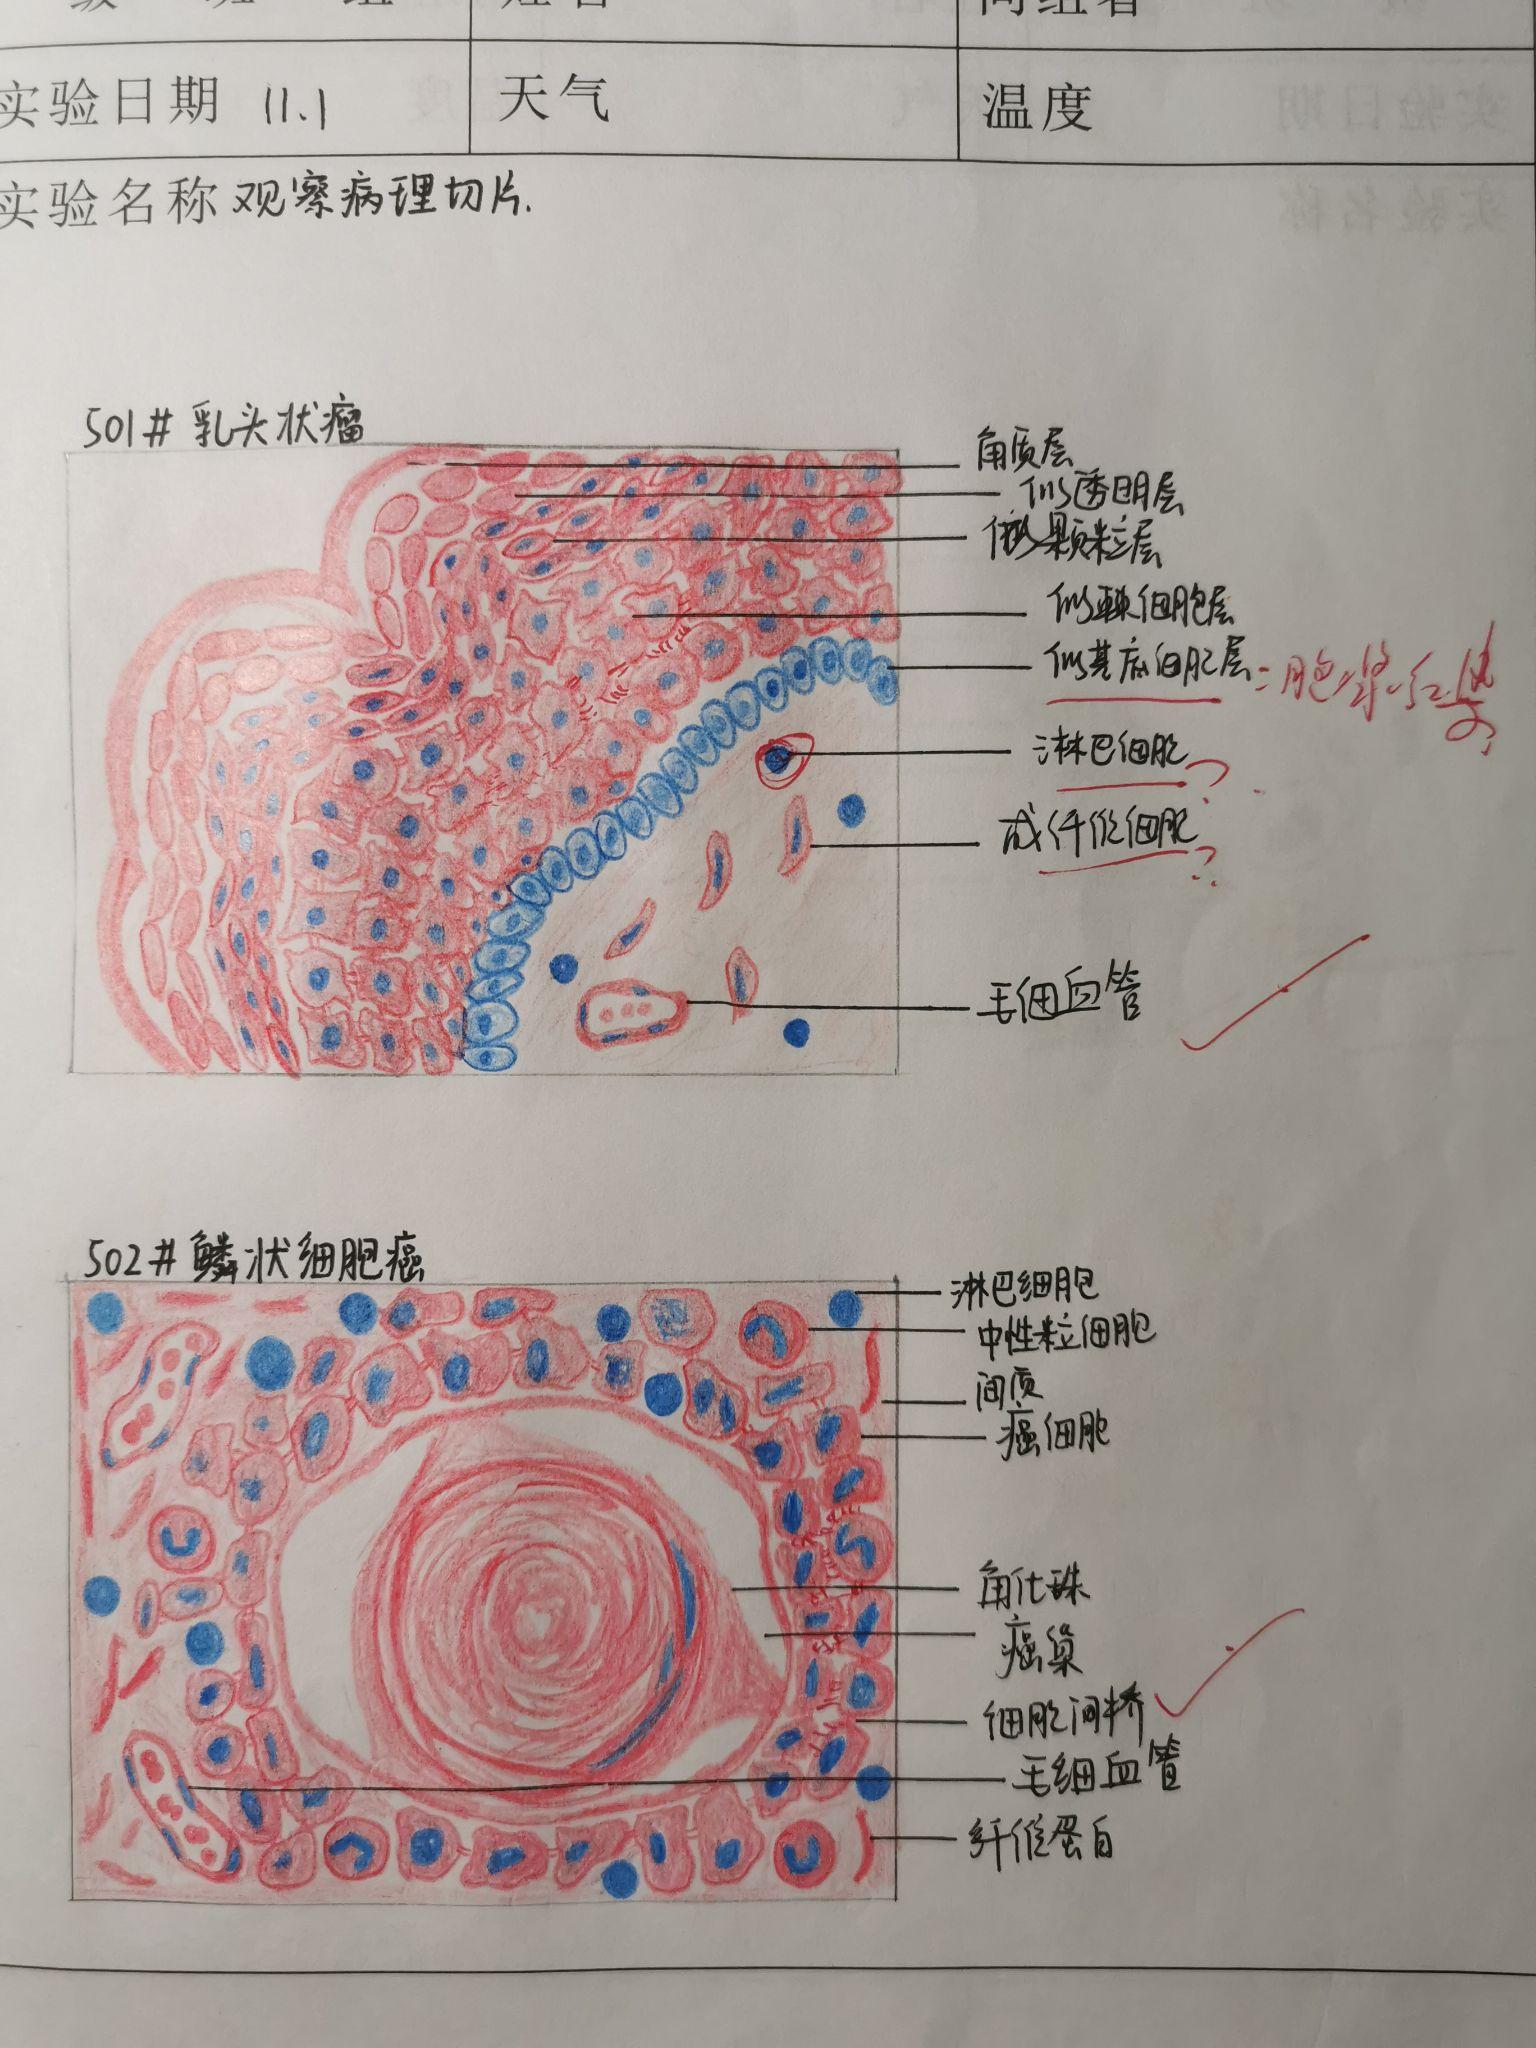 病理实验红蓝铅笔手绘图 